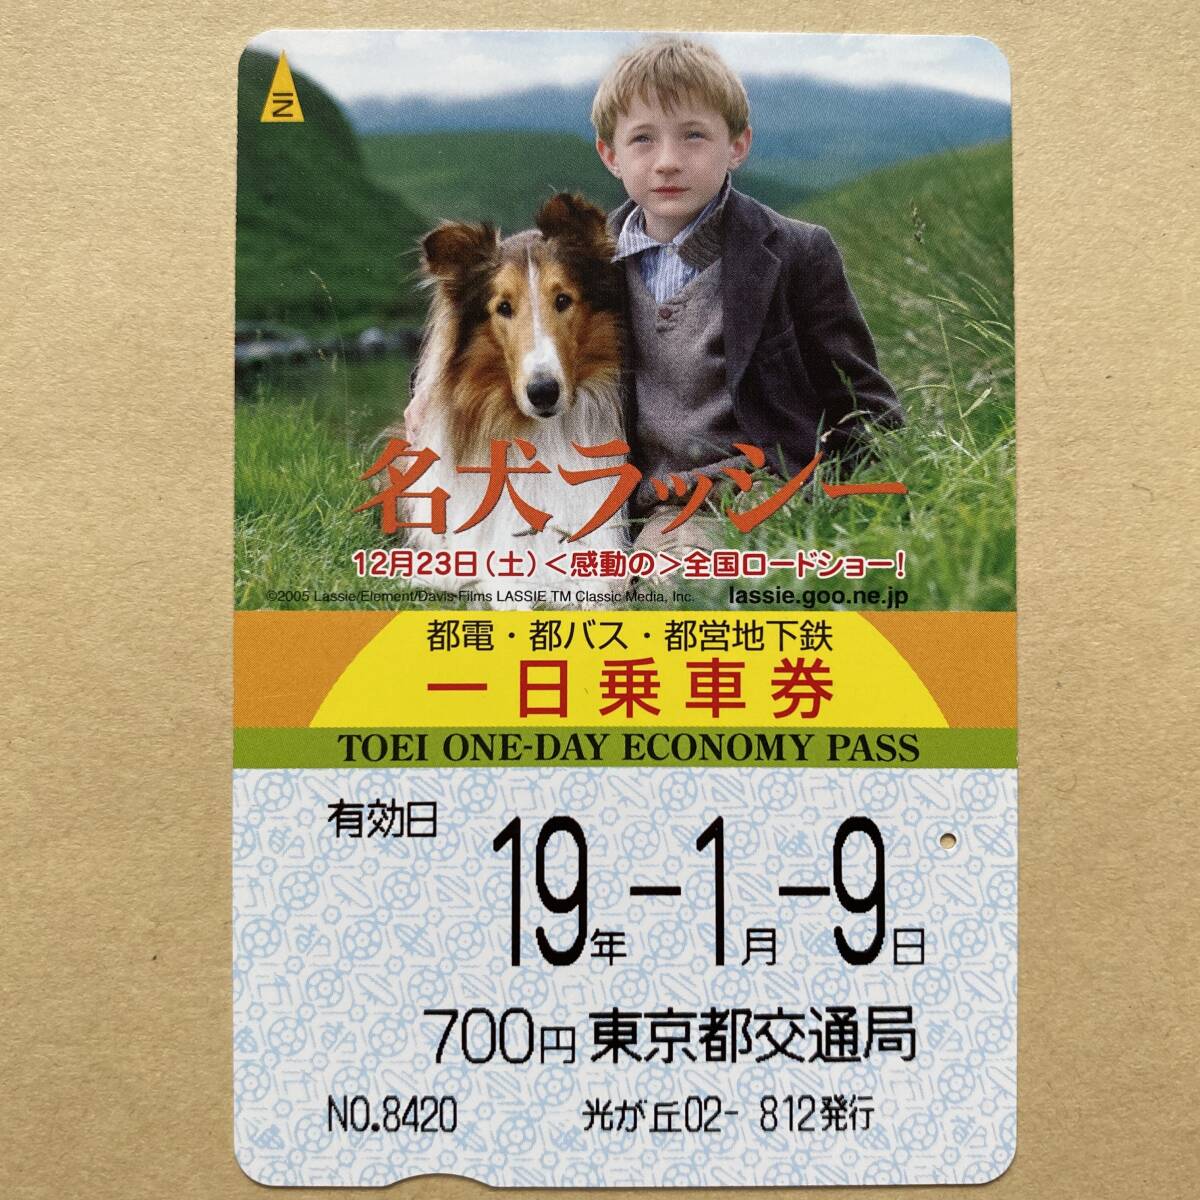 [ использованный ] фильм один день пассажирский билет Tokyo Metropolitan area транспорт отдел название собака lasi-